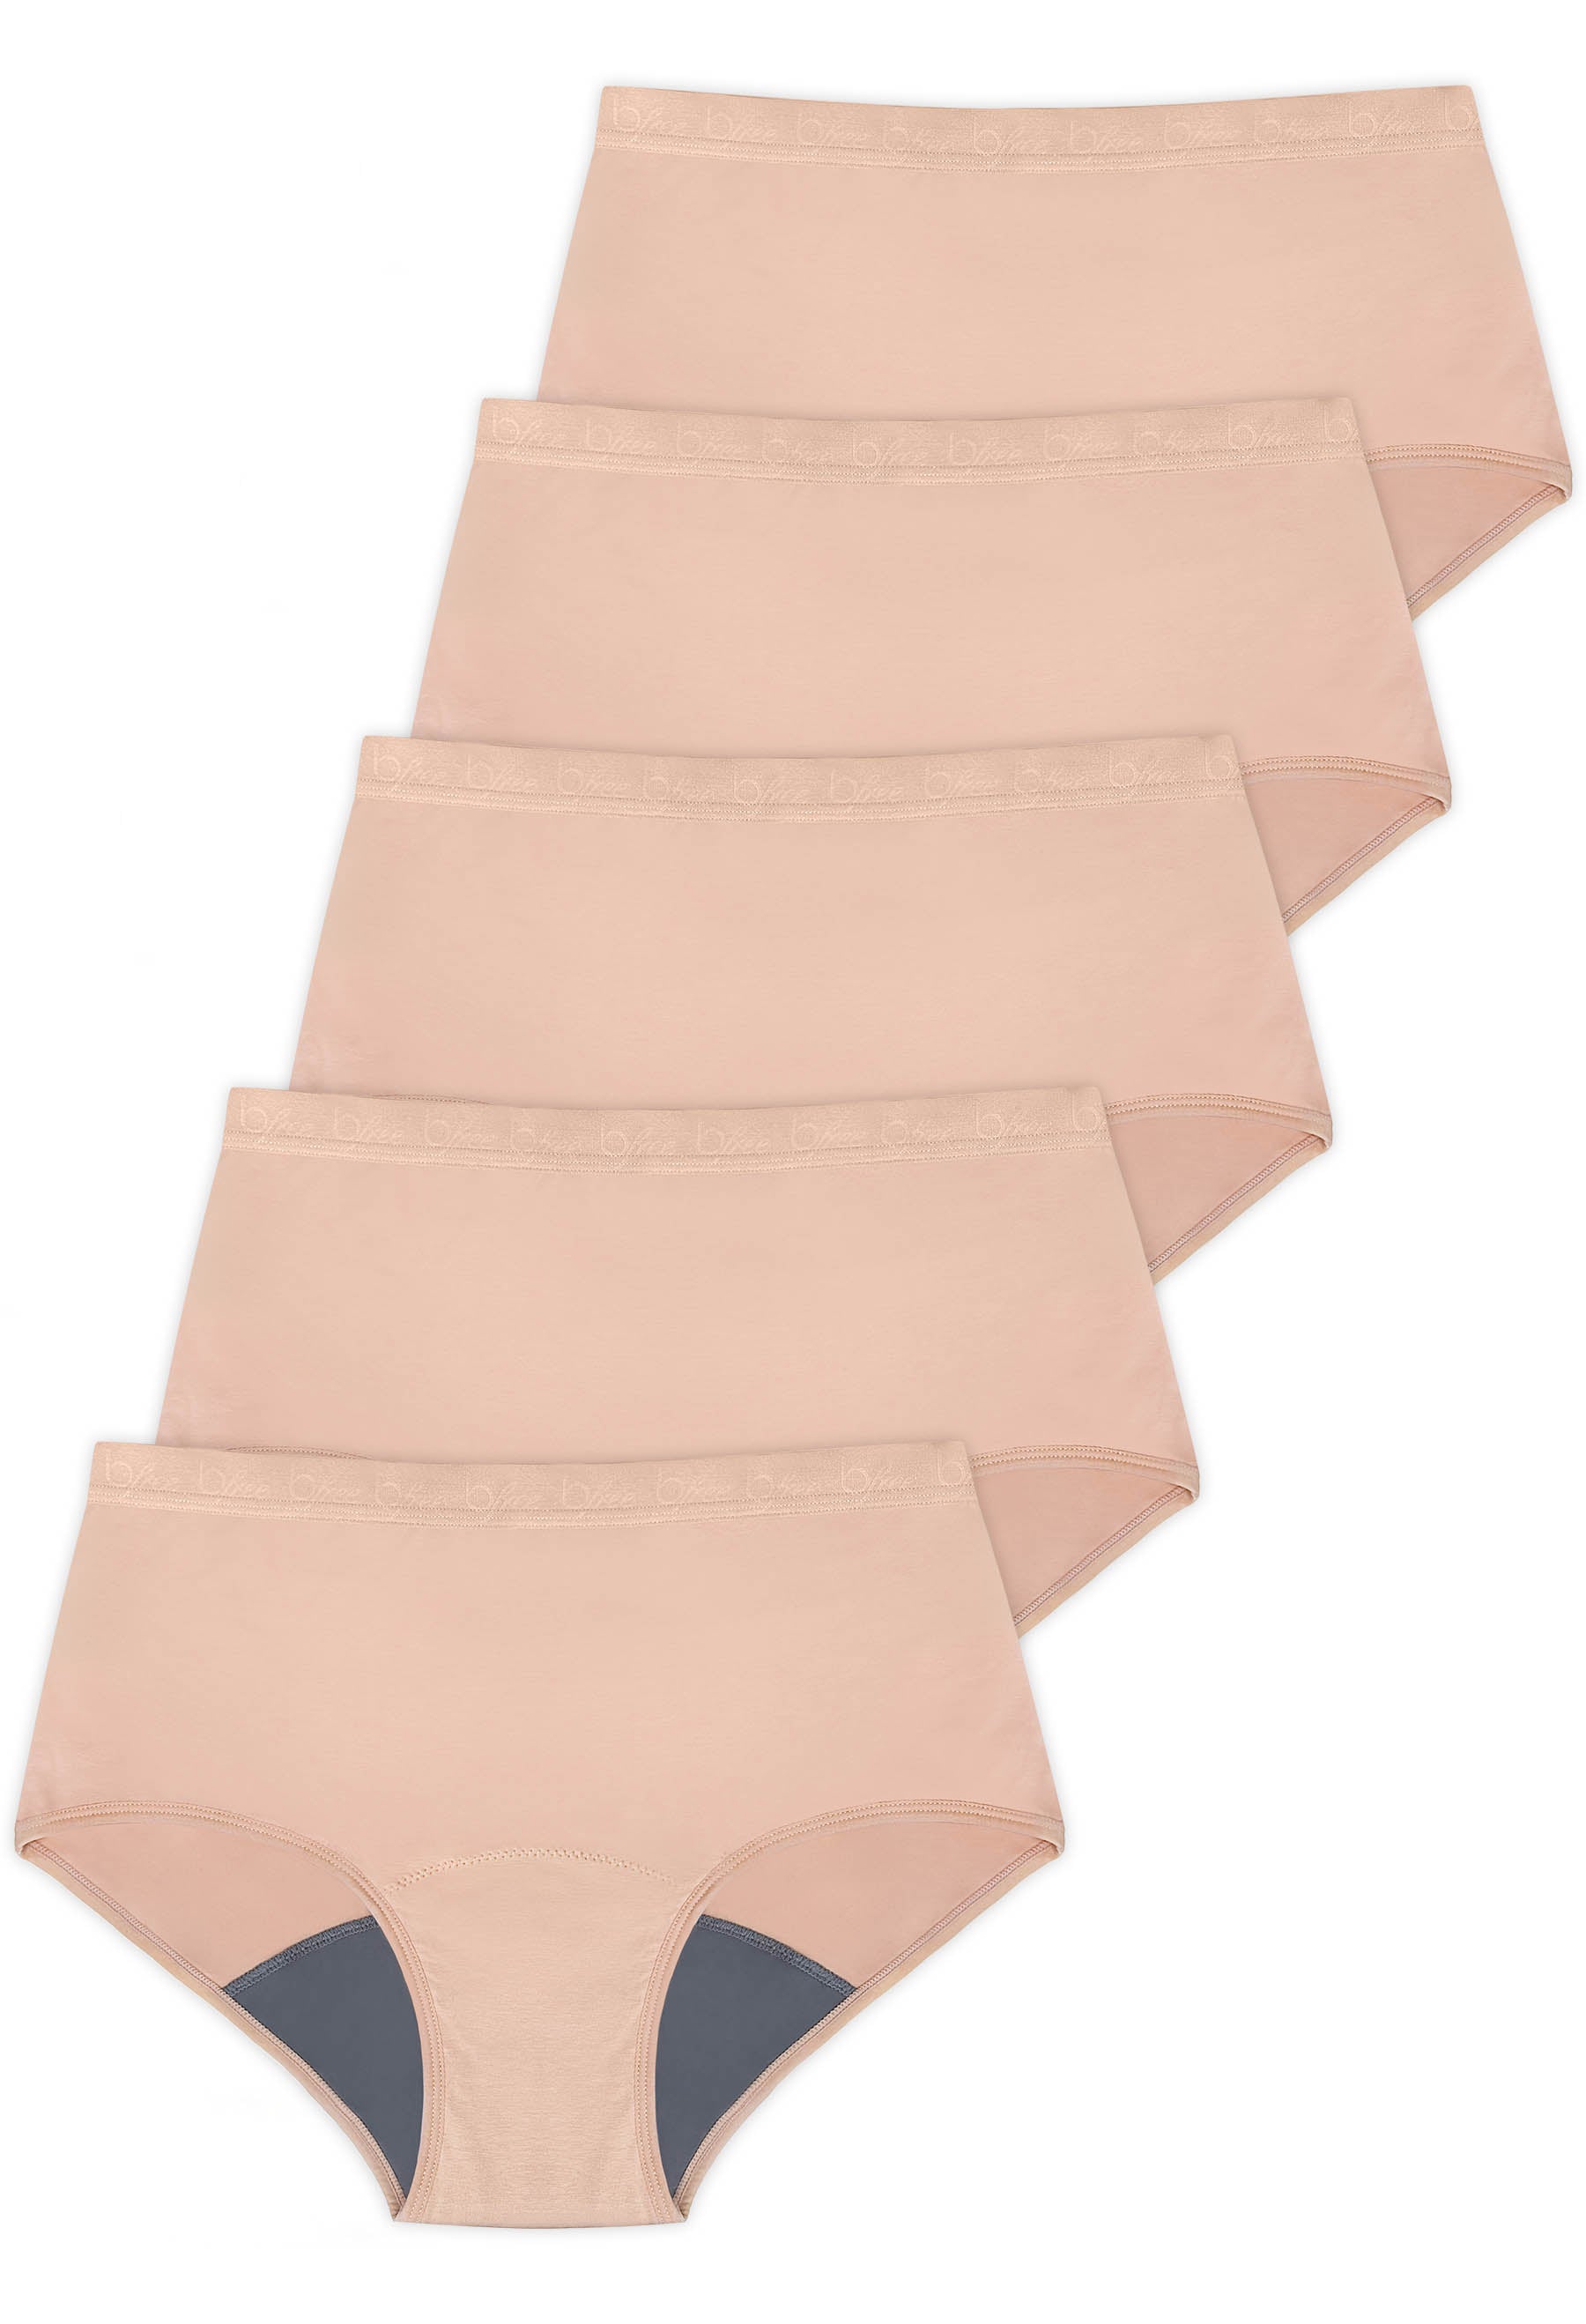 Cotton Fresh Guard Pantyliner Underwear - 5 Pack